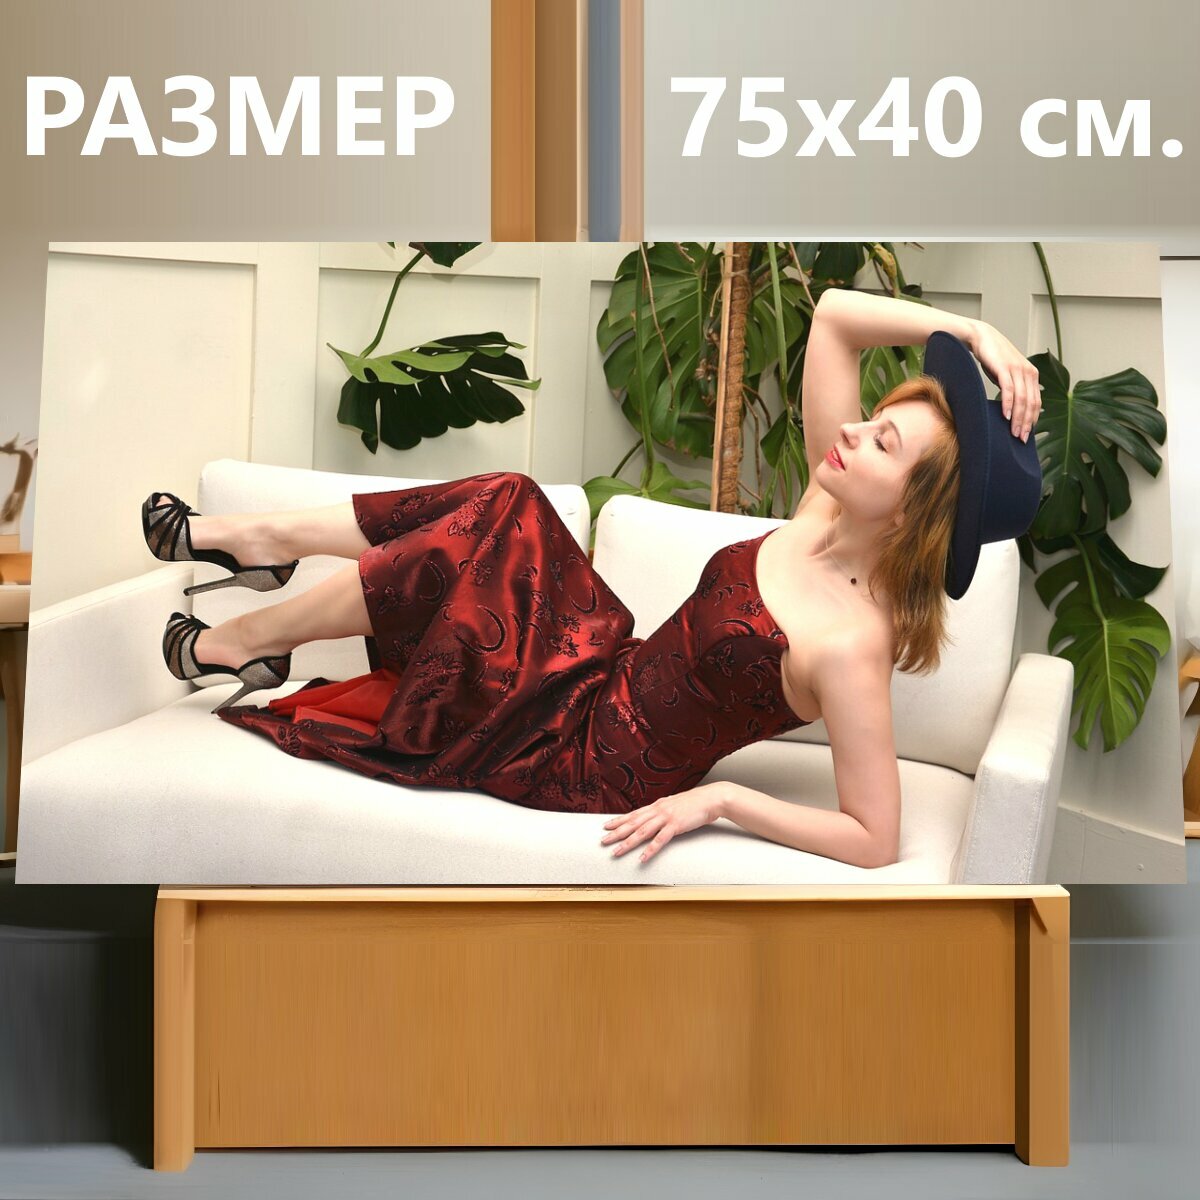 Картина на холсте "Женщина, платье, модель" на подрамнике 75х40 см. для интерьера